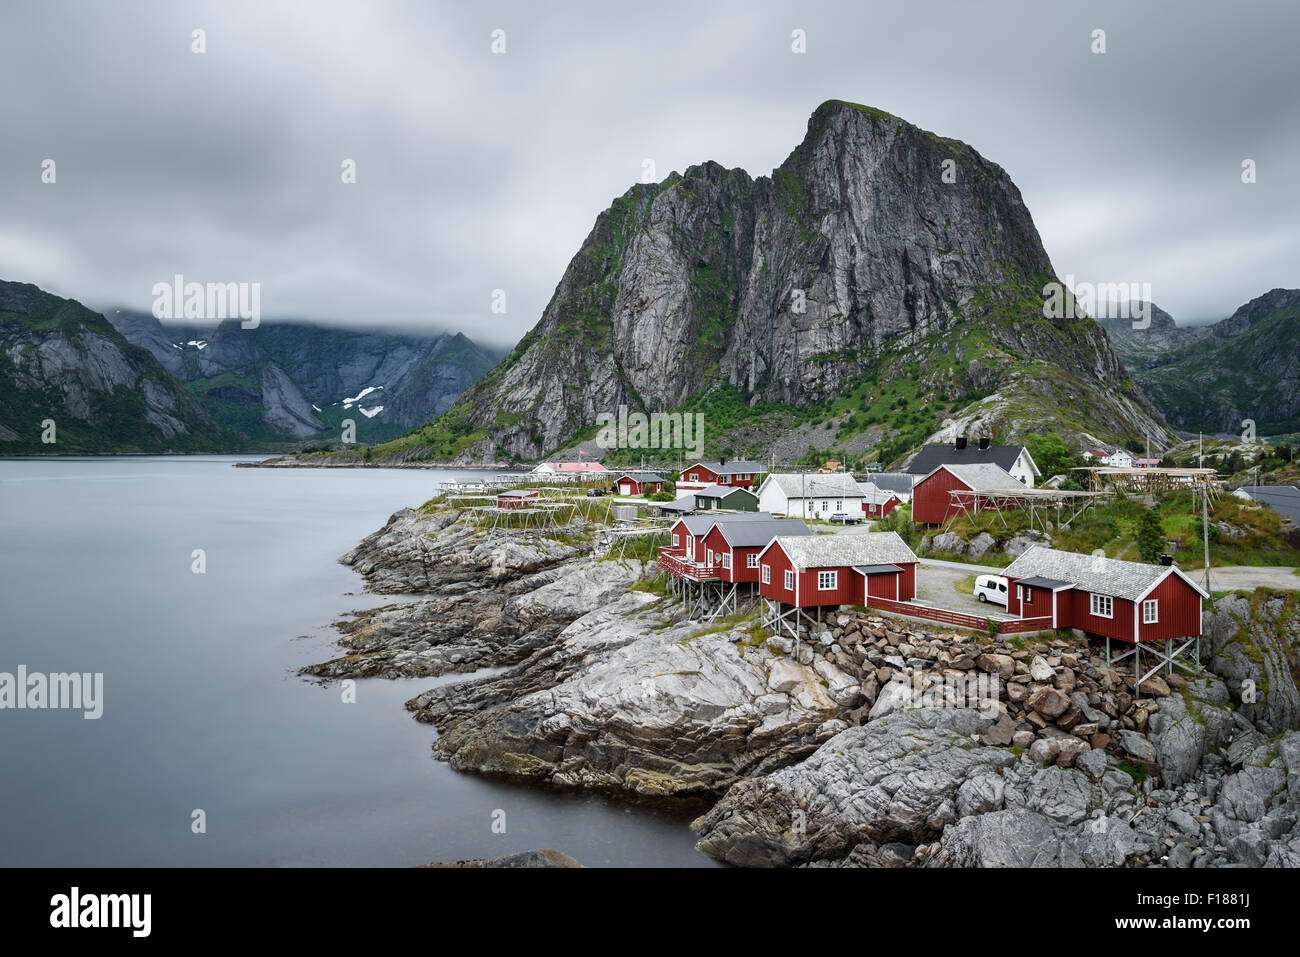 Rorbu rouge traditionnelle sous l'Lilandstinden cottages dans village montagne Hamnoy, îles Lofoten, Norvège. Longue exposition. Banque D'Images